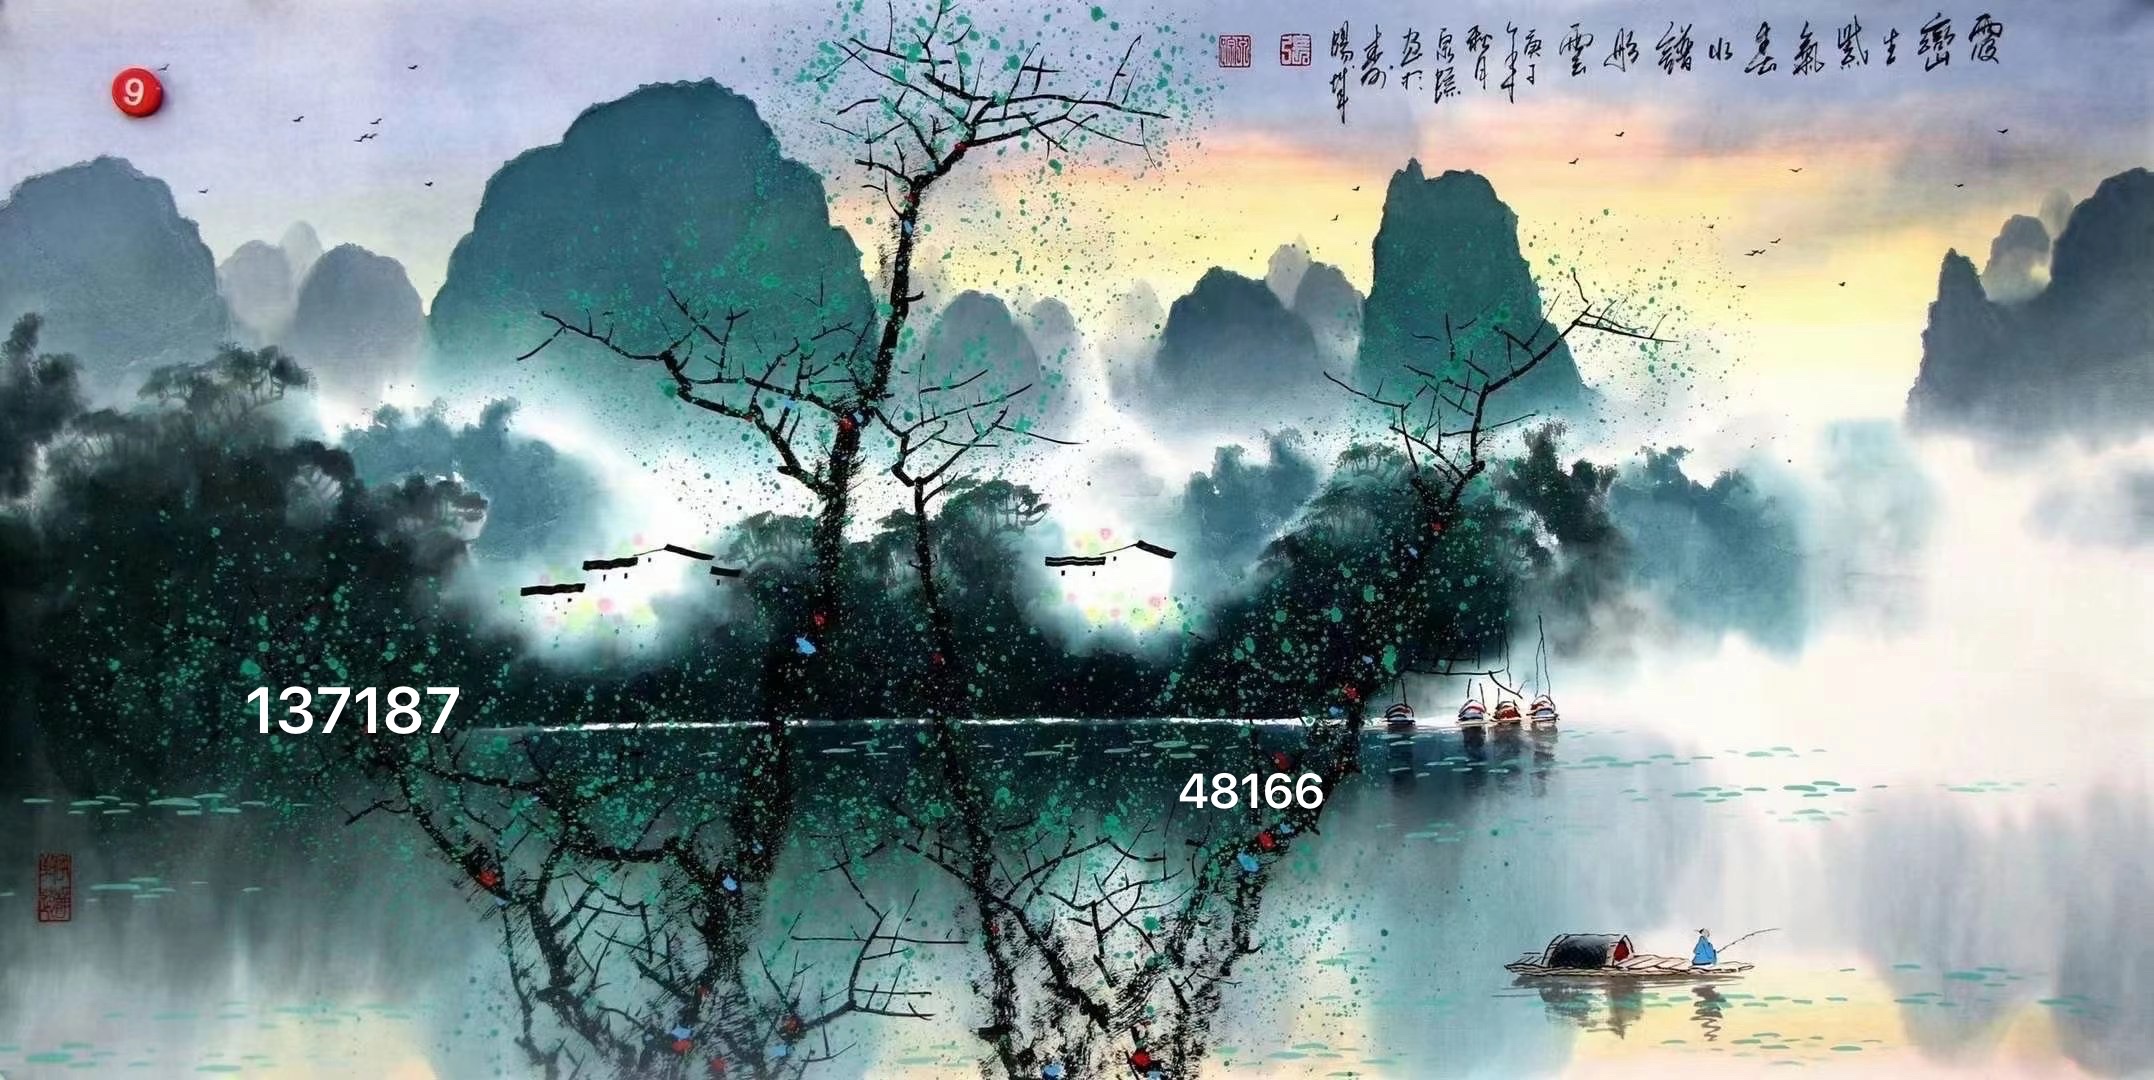 张泉踪13718748166的山水国画大都以美丽的桂林,阳朔风光为实景,他